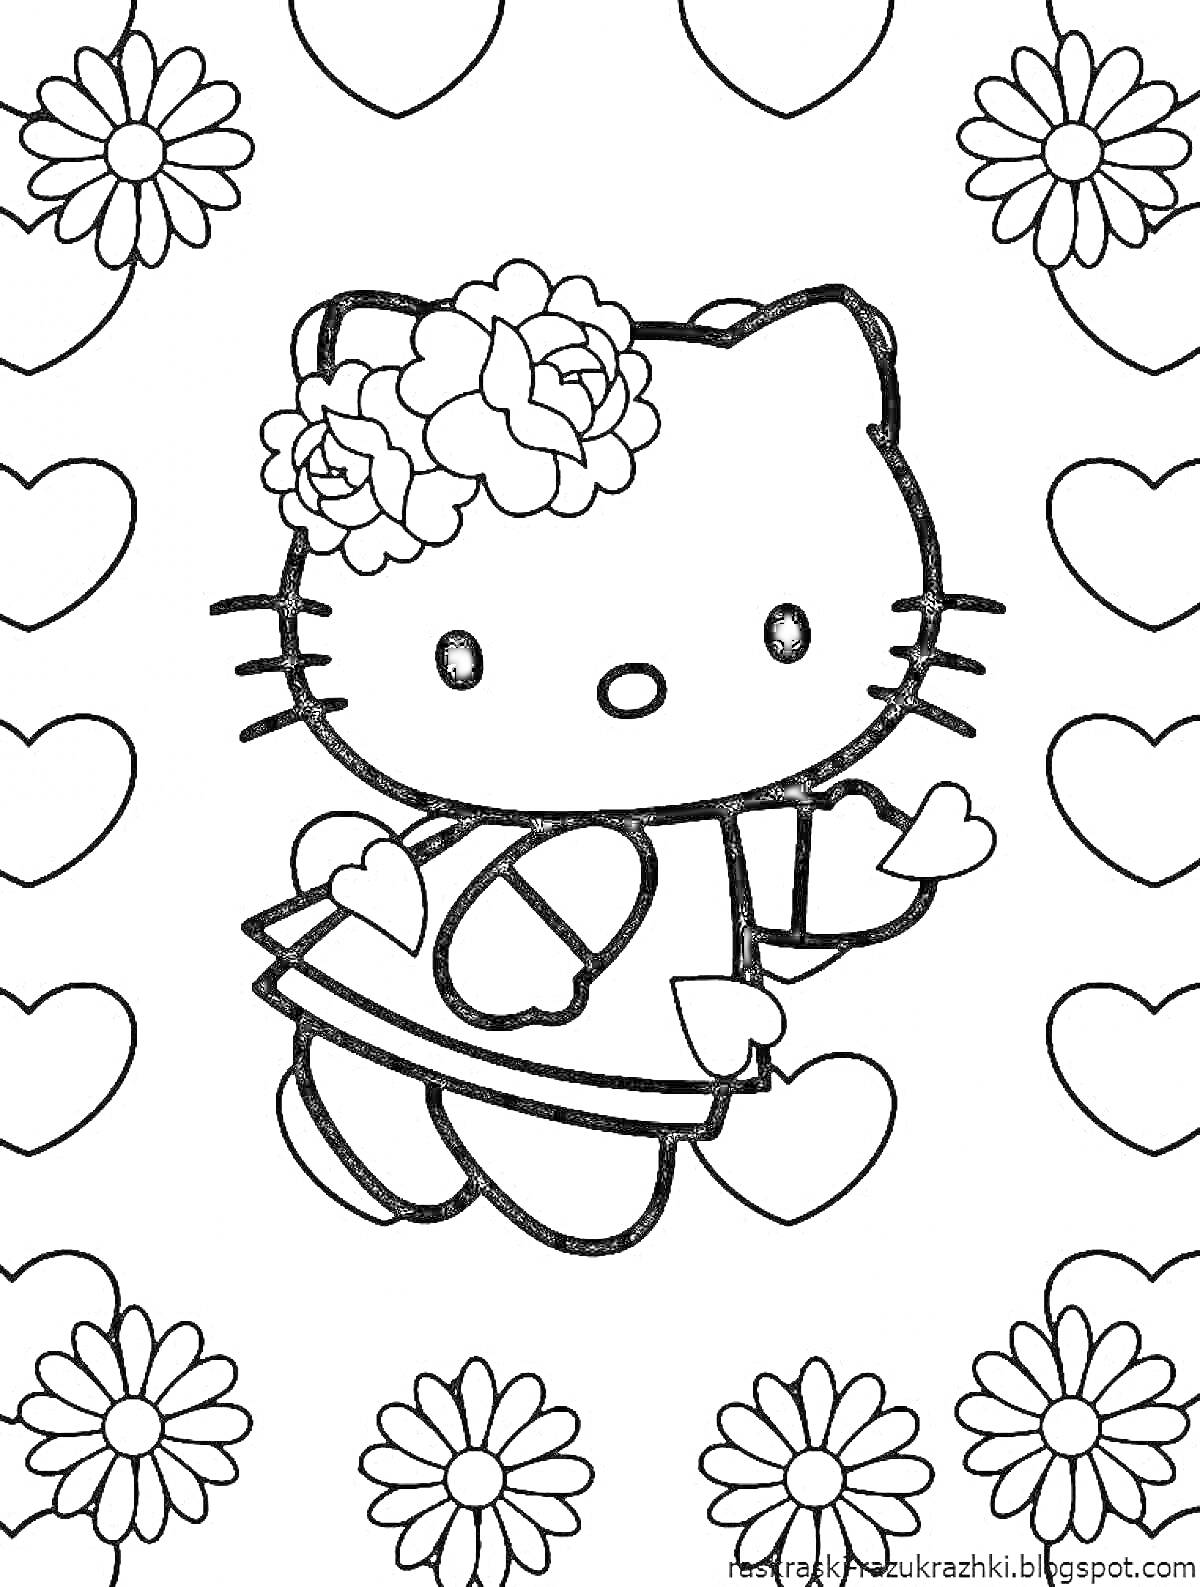 Раскраска Hello Kitty в венке из цветов, окруженная сердечками и цветами